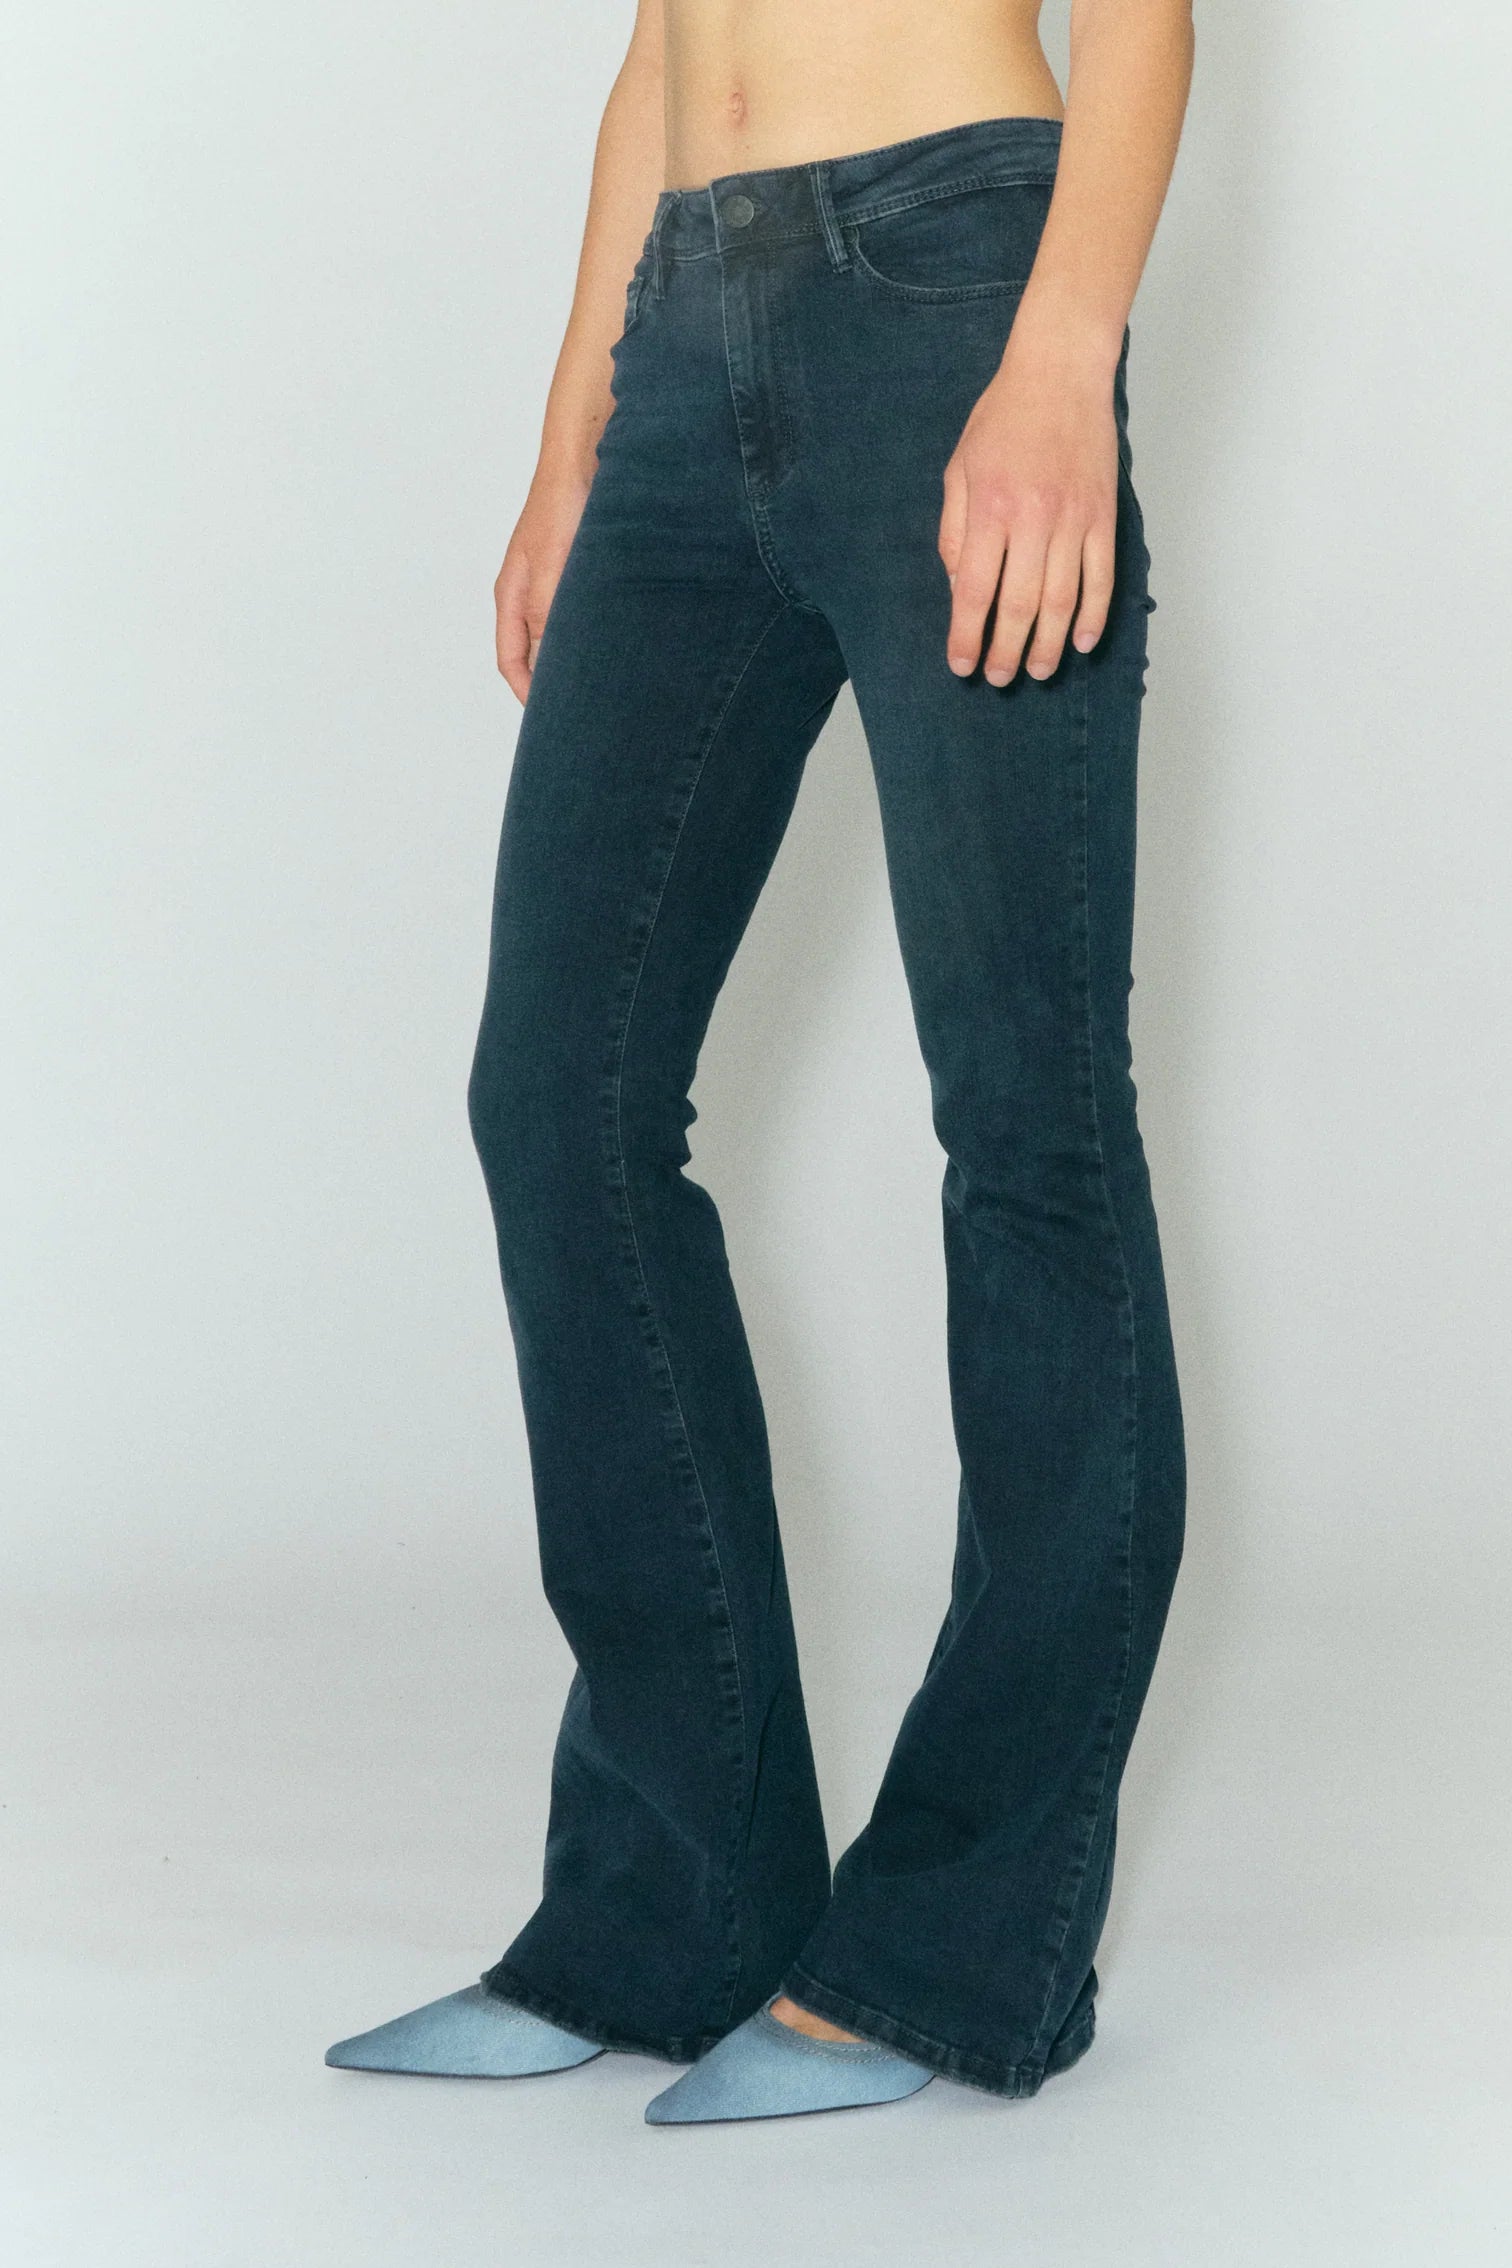 Model wears long flared jeans in dark blue wash